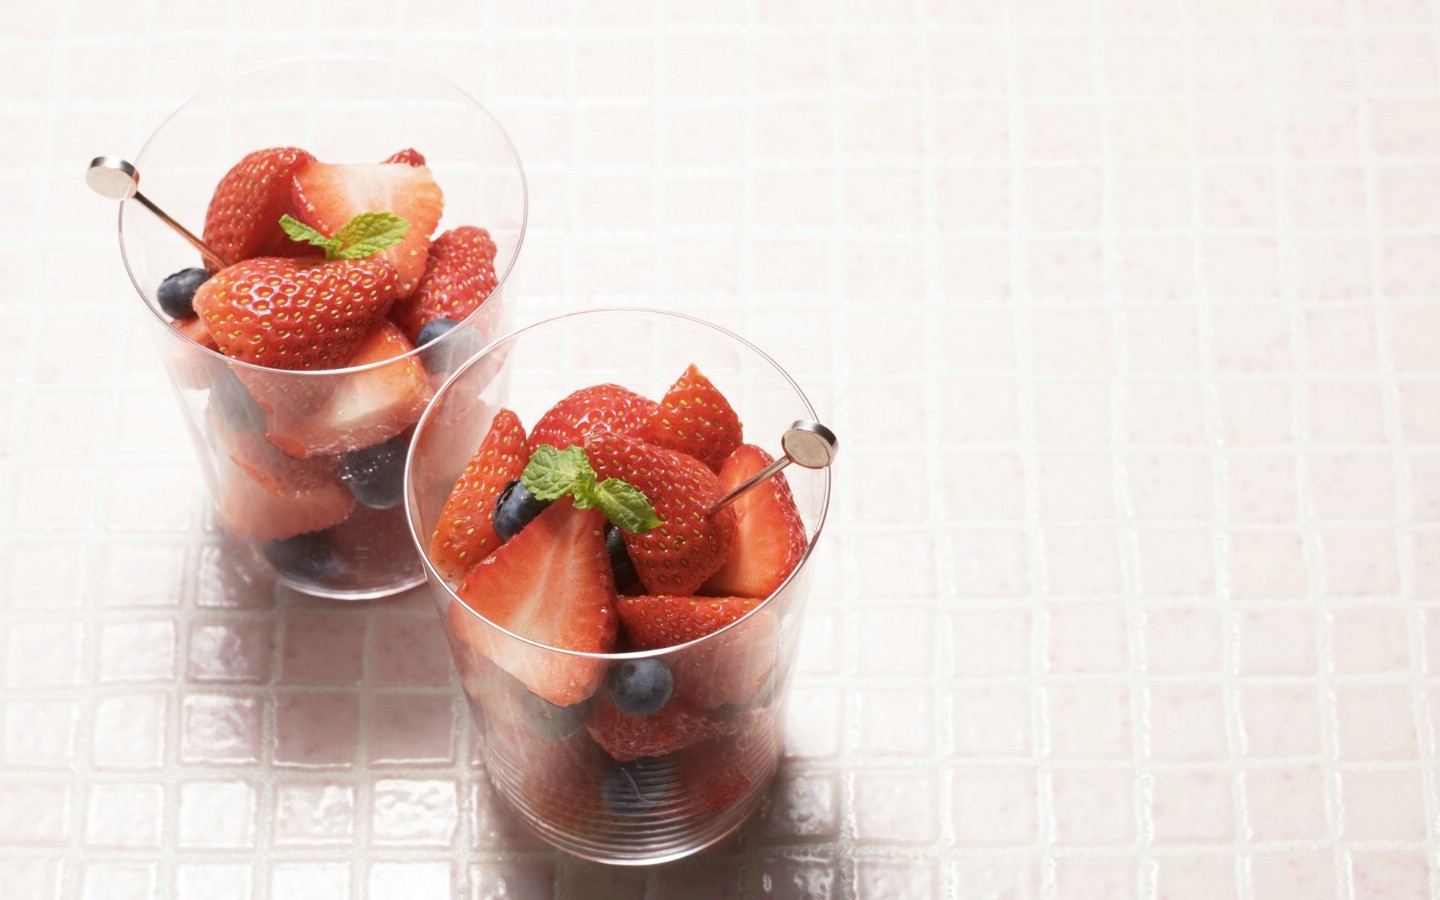 壁纸1440x900餐桌 [33P] 草莓水果杯 水果甜点图片壁纸 水果甜点摄影(二)壁纸 水果甜点摄影(二)图片 水果甜点摄影(二)素材 摄影壁纸 摄影图库 摄影图片素材桌面壁纸